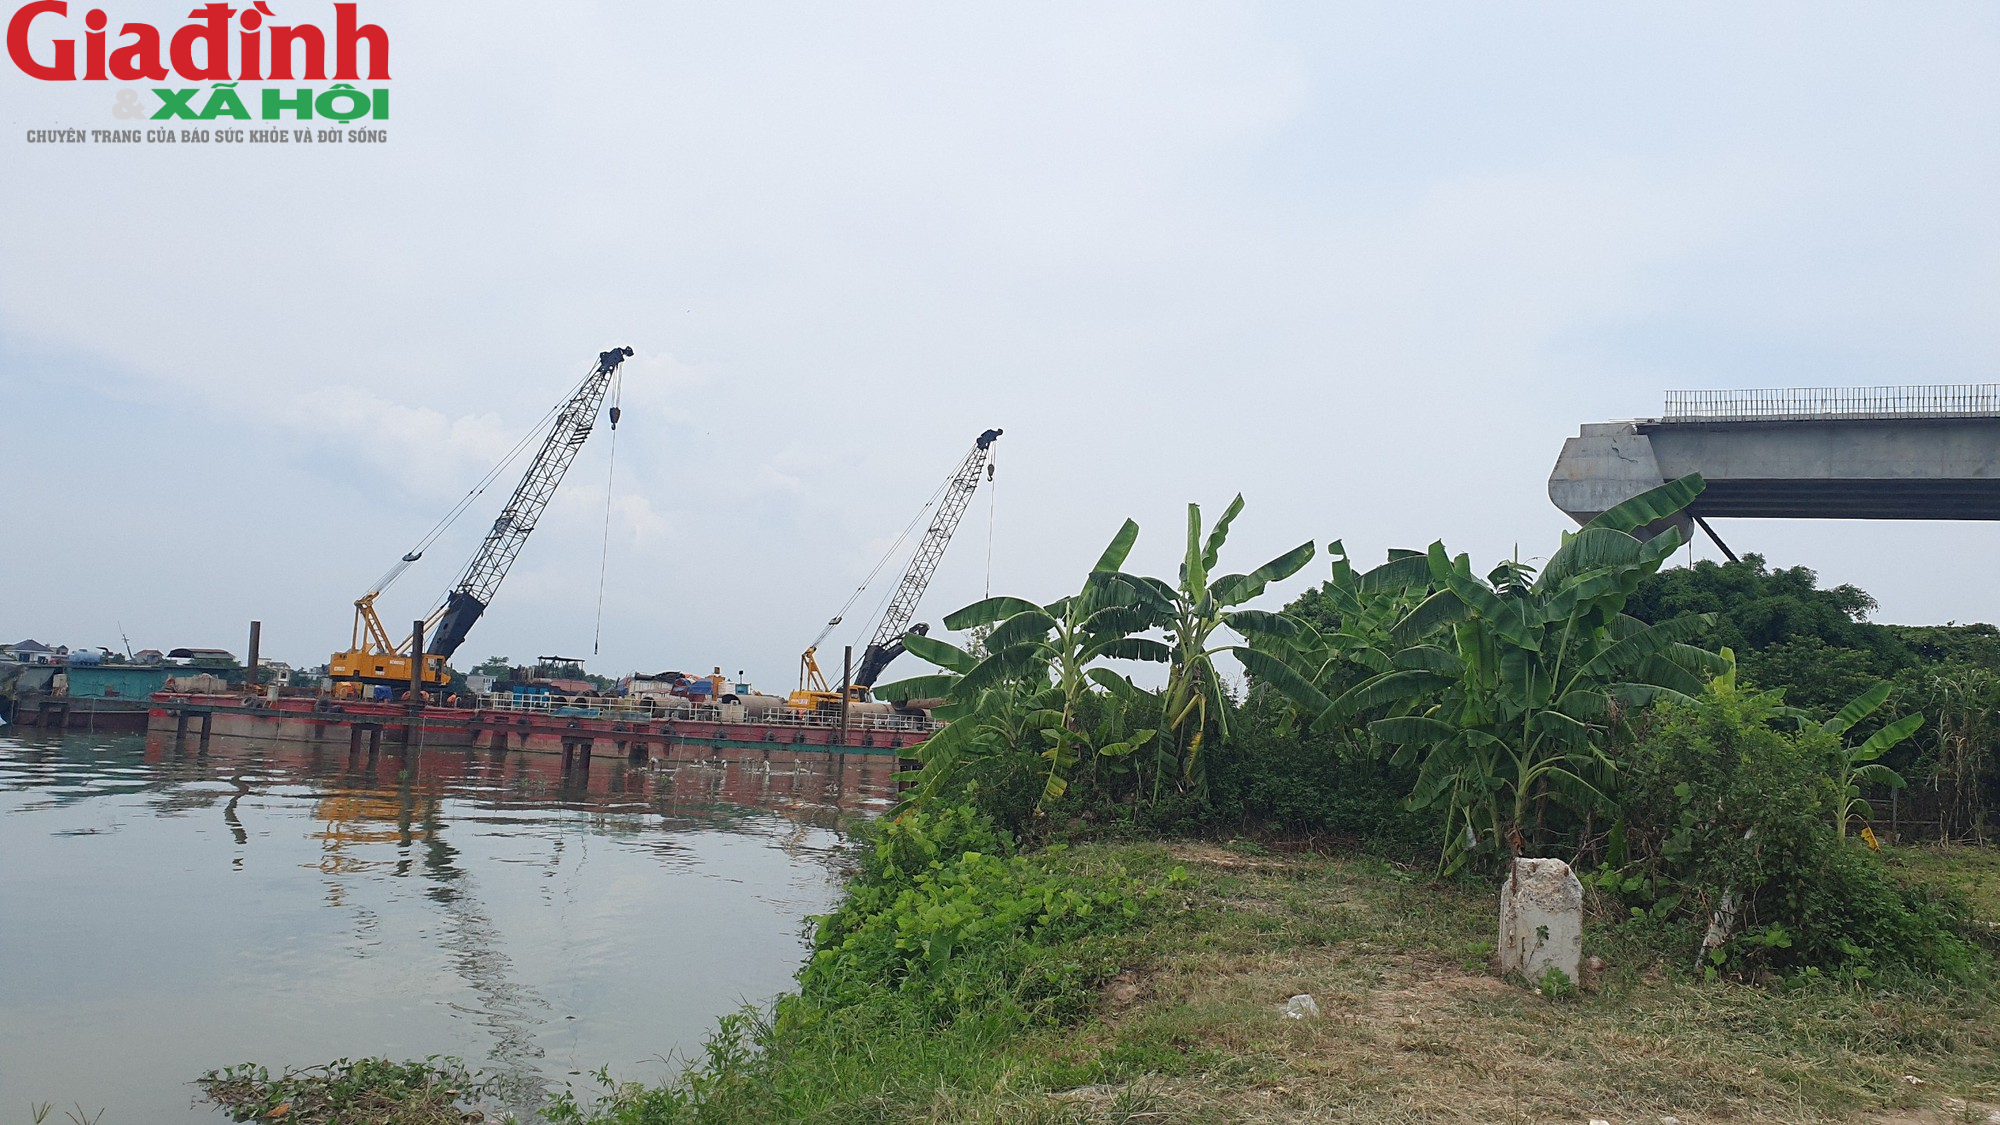 Sẽ không còn cảnh chờ phà khi Cầu Đồng Cao nối hai bở sông Đào hoàn thành - Ảnh 6.